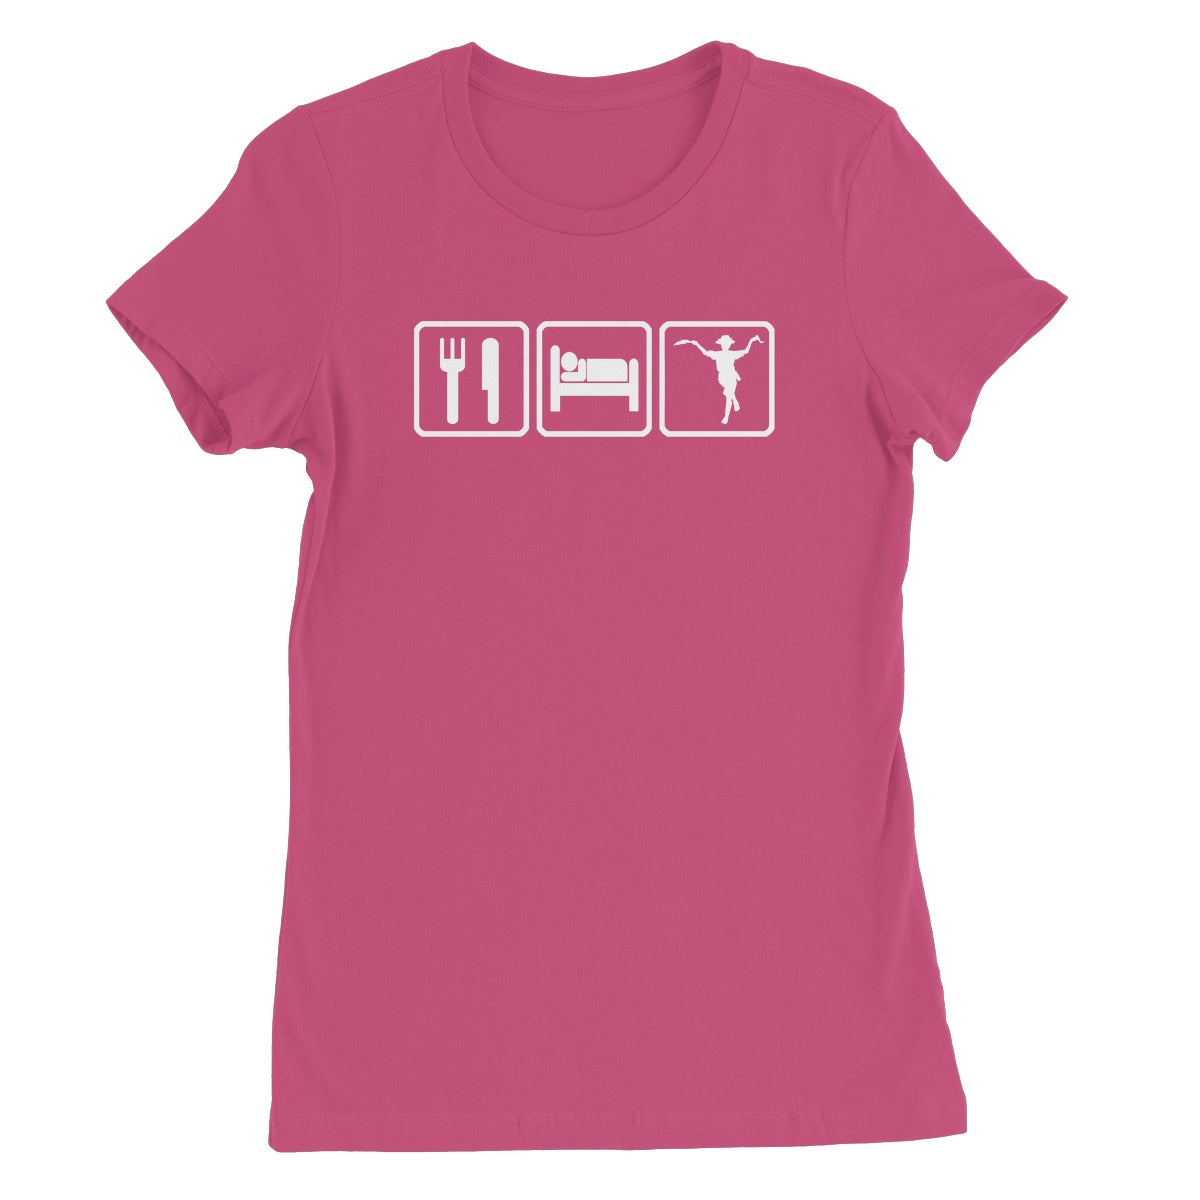 Eat Sleep & Morris Dance Women's T-Shirt